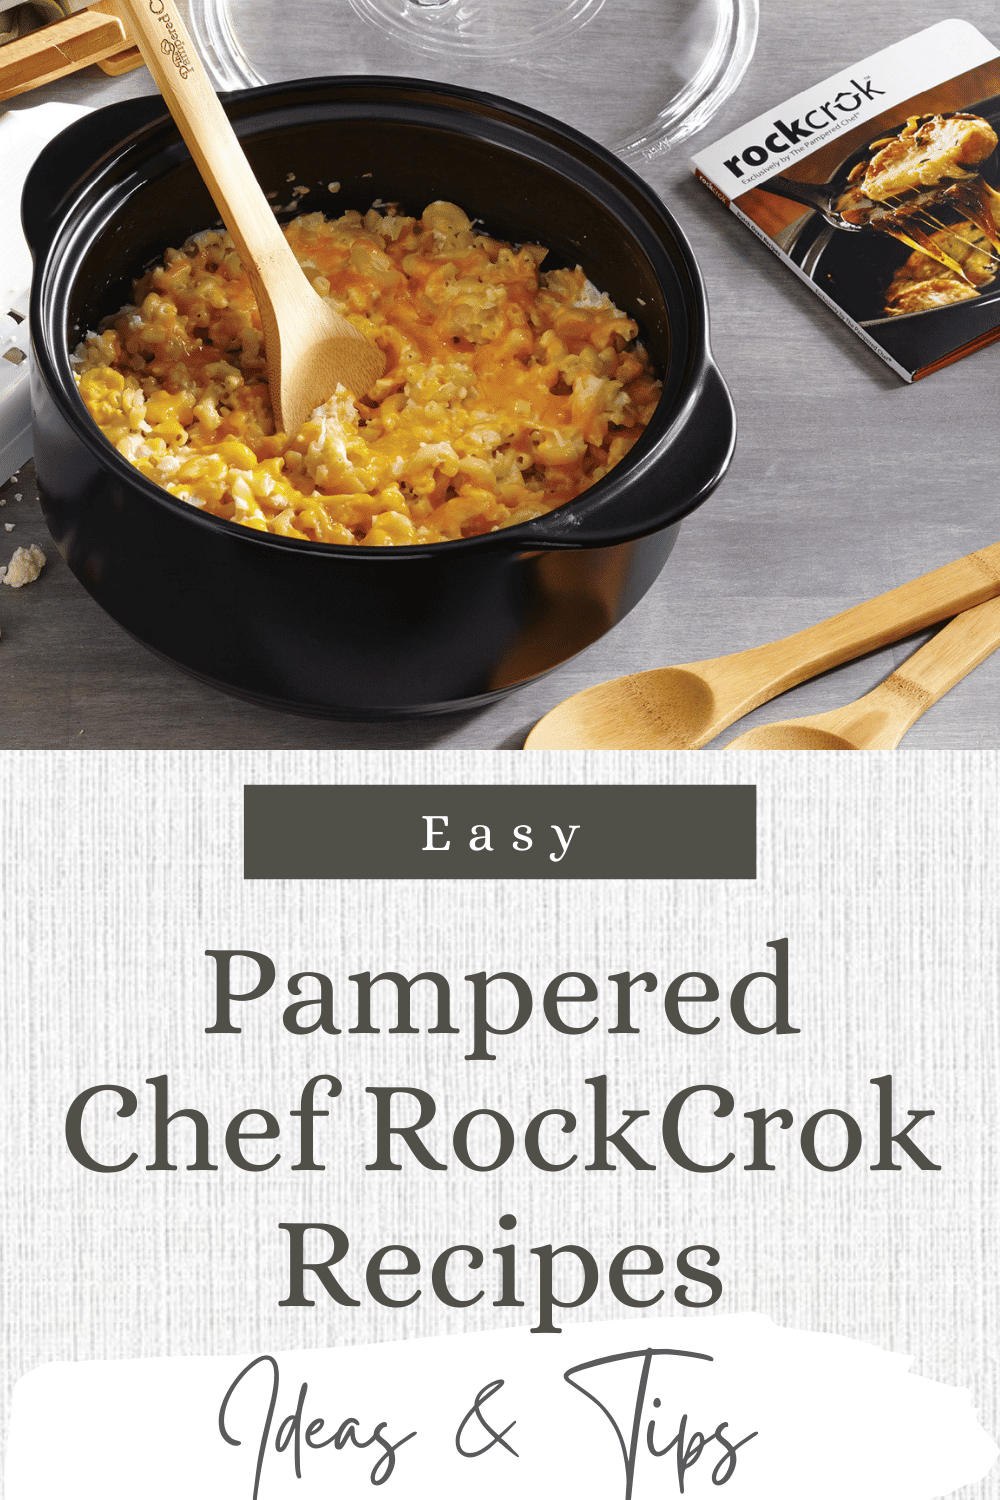 Rockcrok 4-qt. Slow Cooker Set - Shop